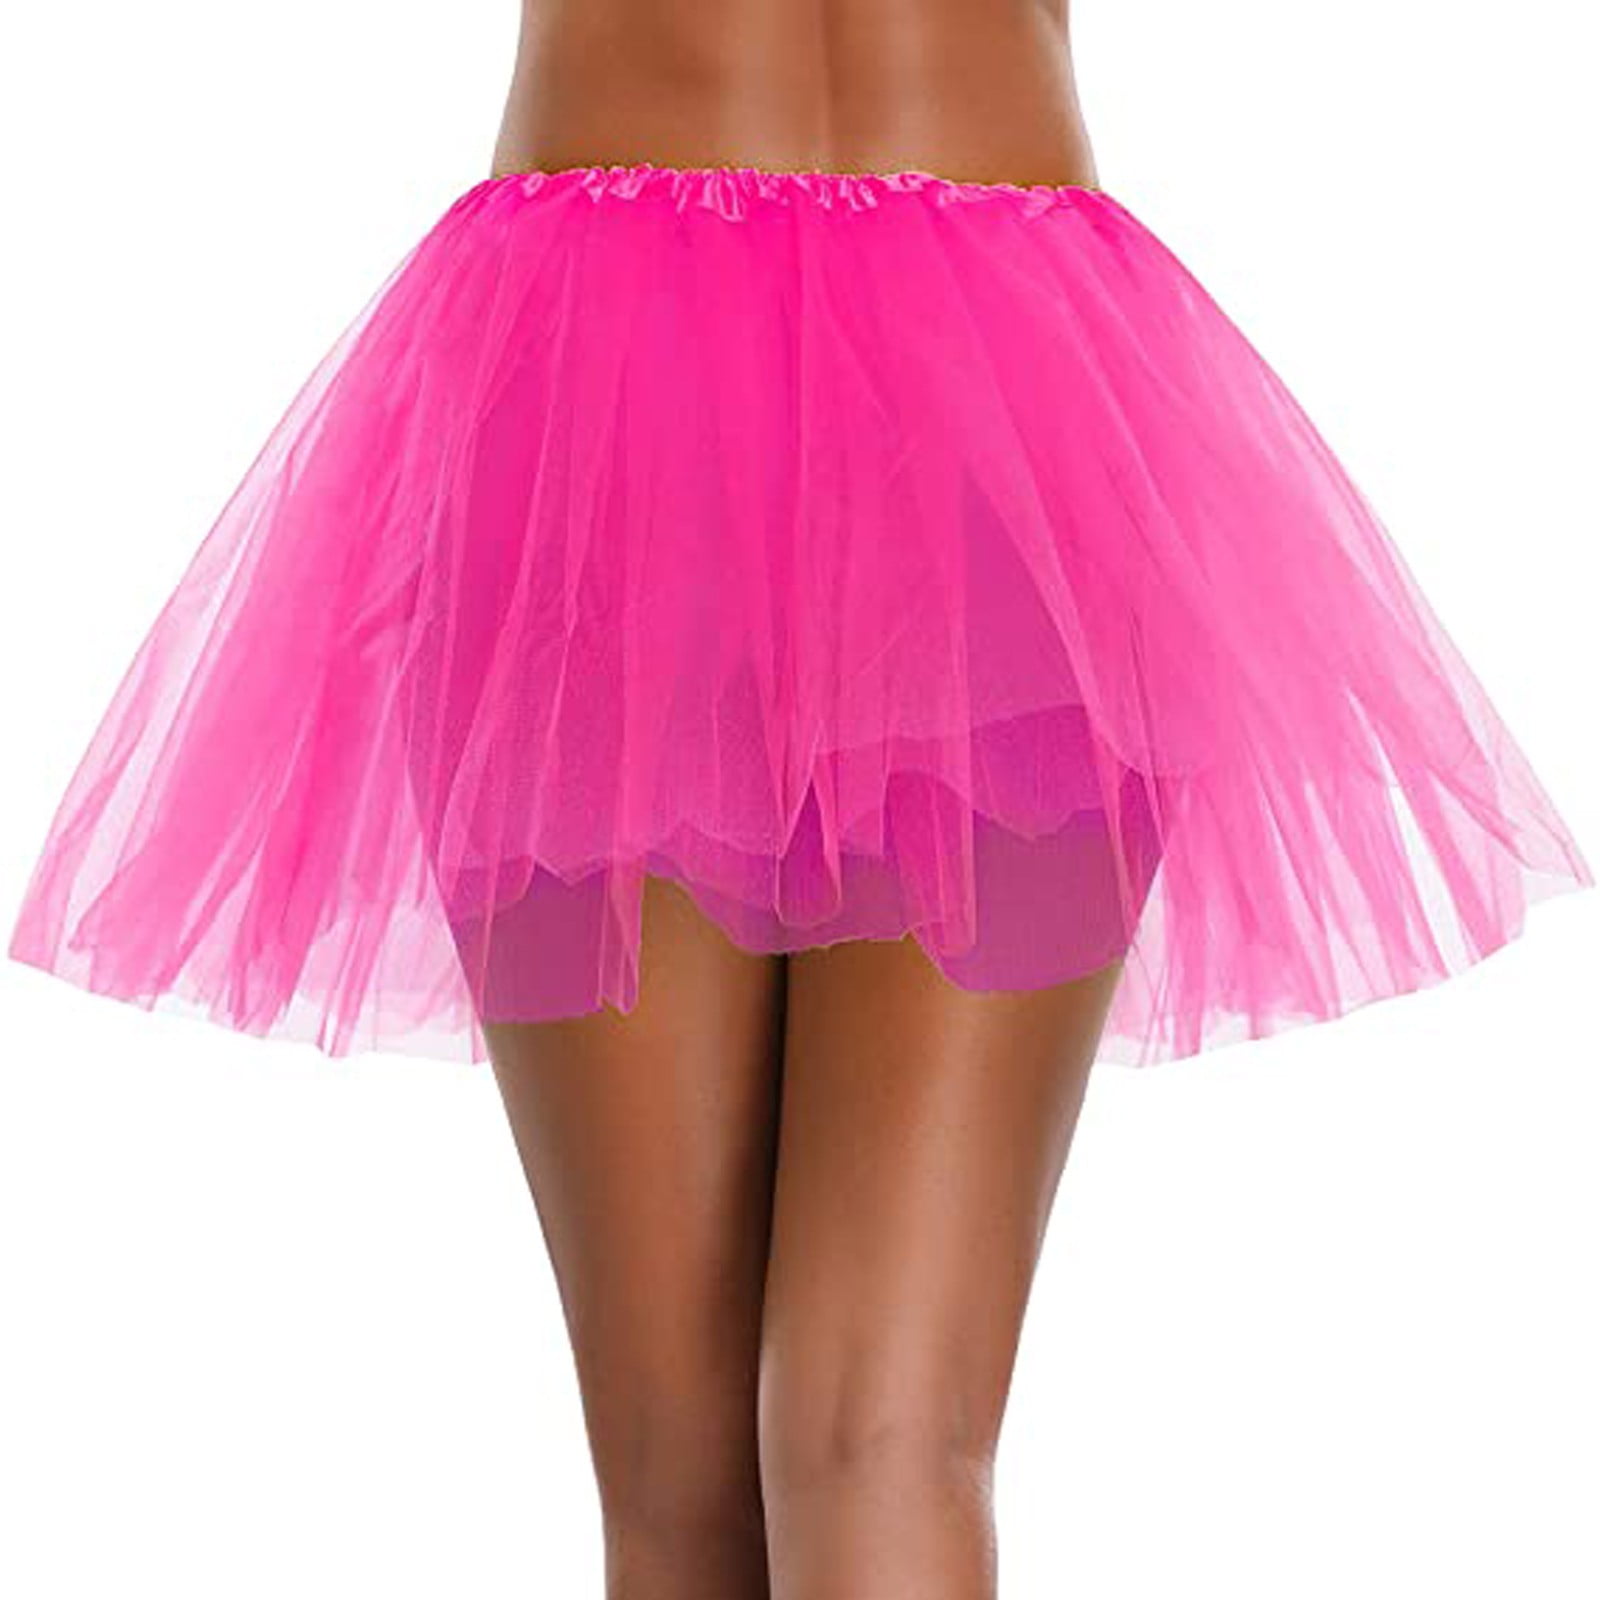 Sweet Teens Girl Tutu 3 Layer Skirt Adult Dance Ballet Party Womens New Hot E 